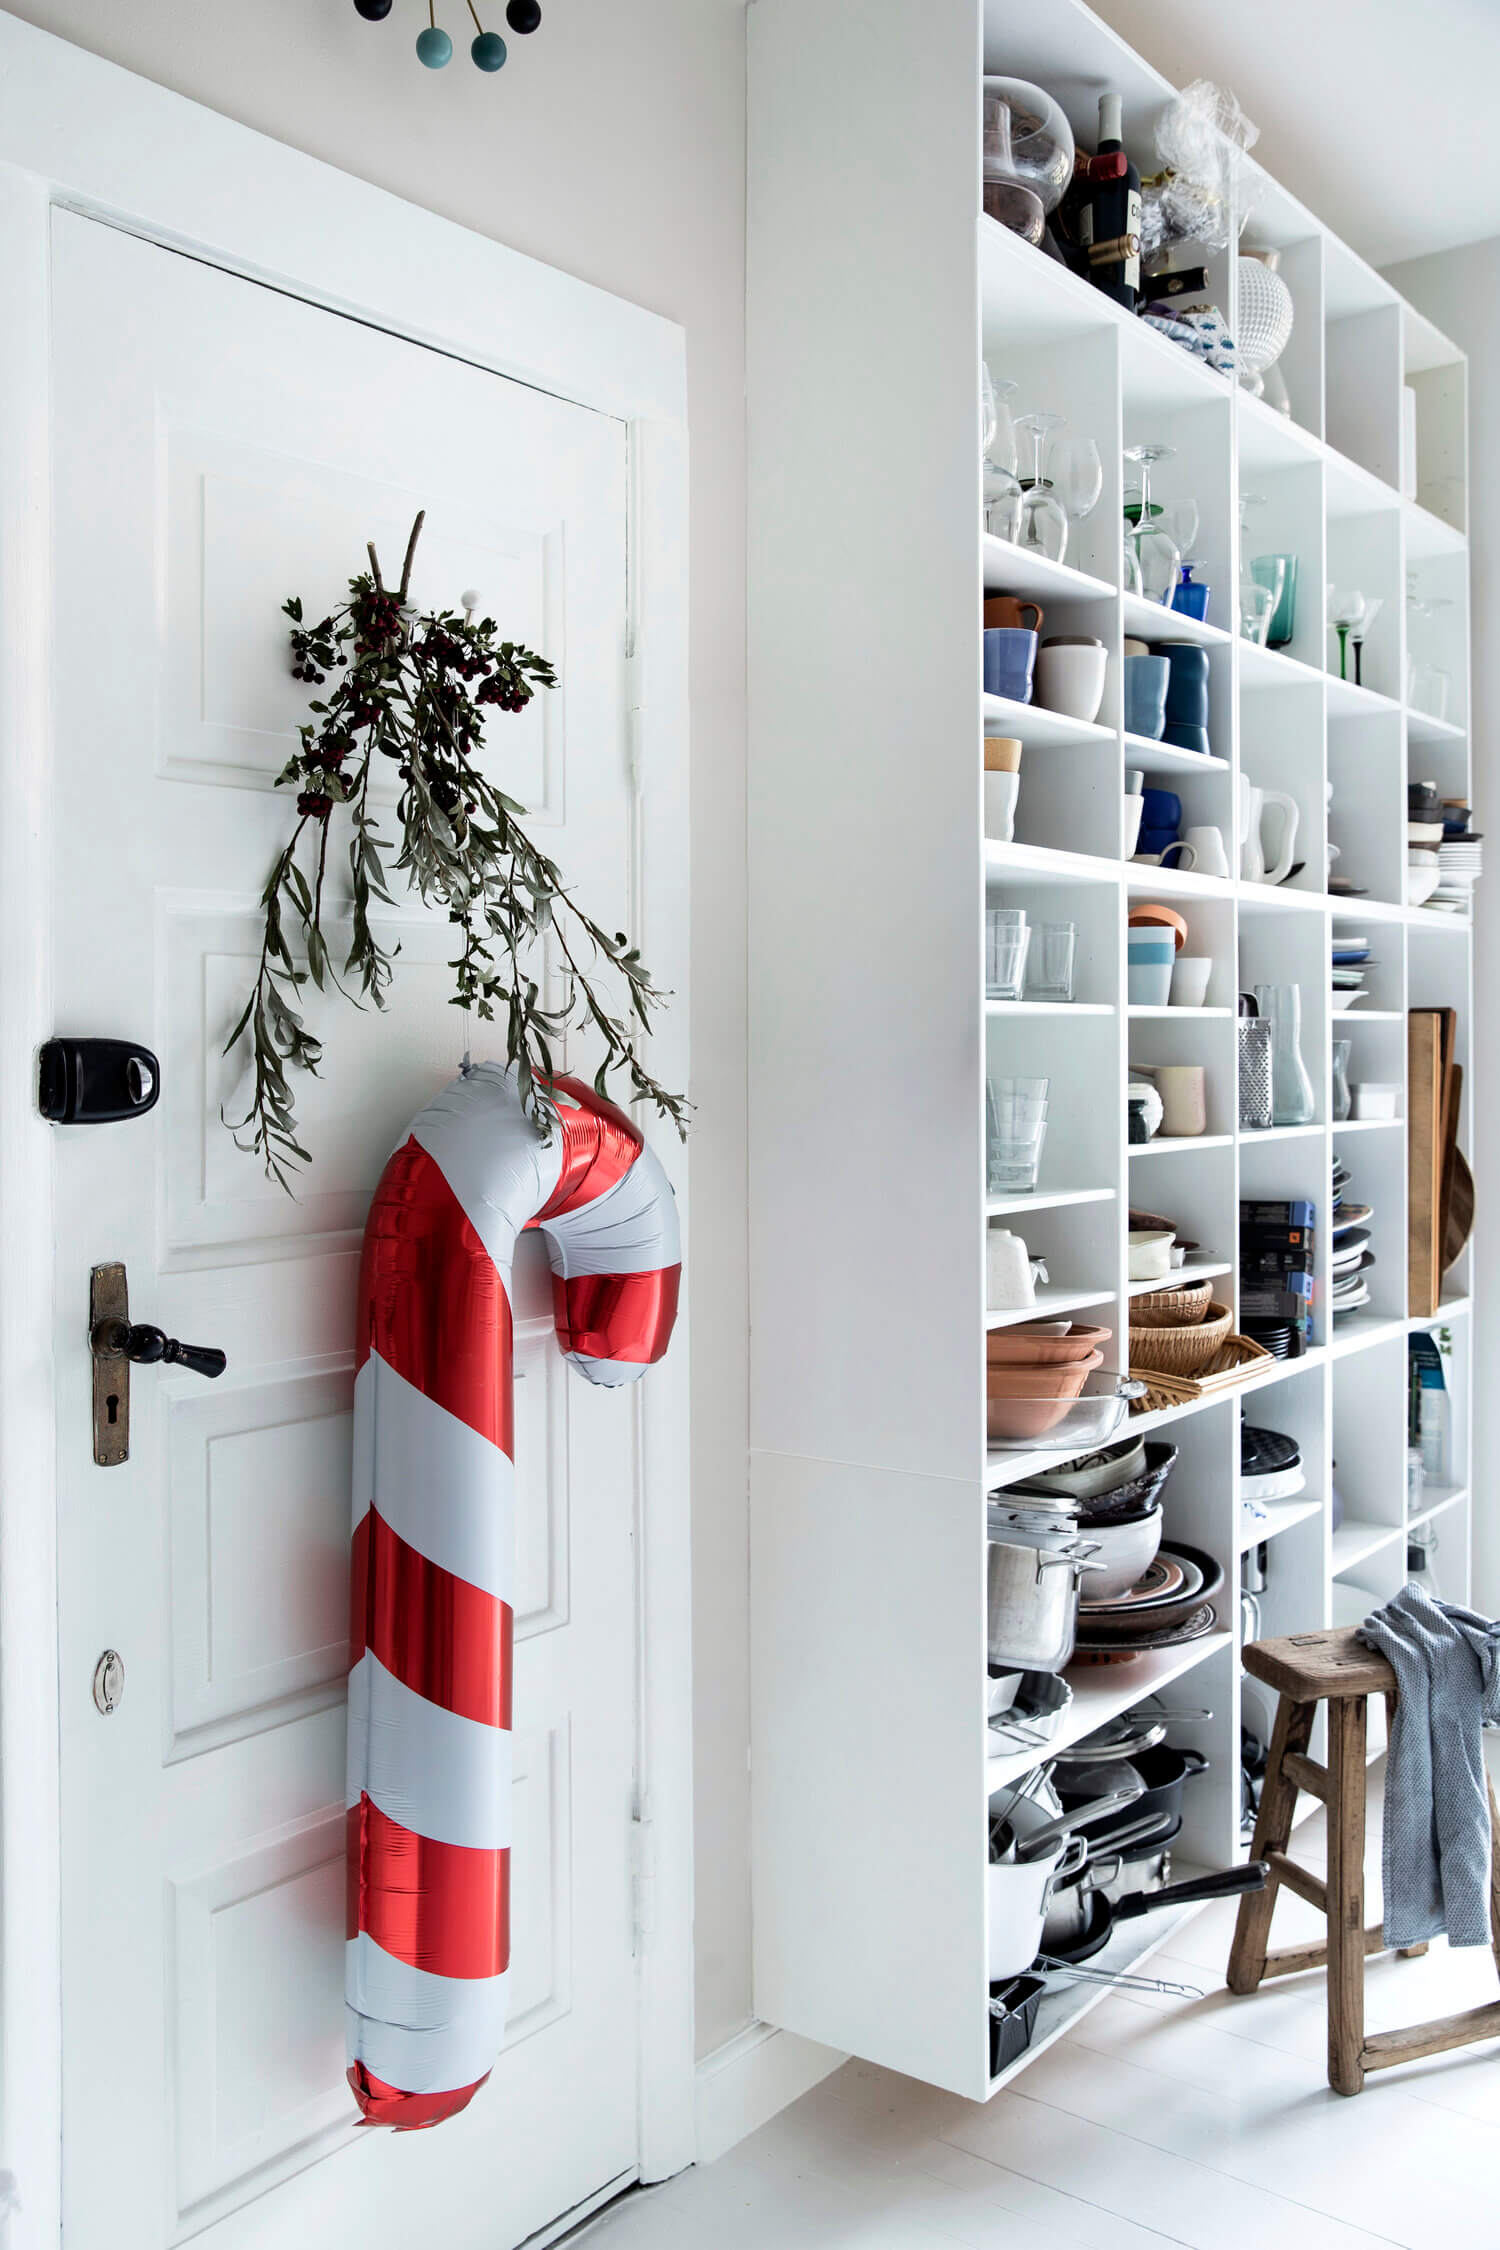 art filled danish home christmas decor nordroom14 An Art-Filled Danish Home Decorated For Christmas